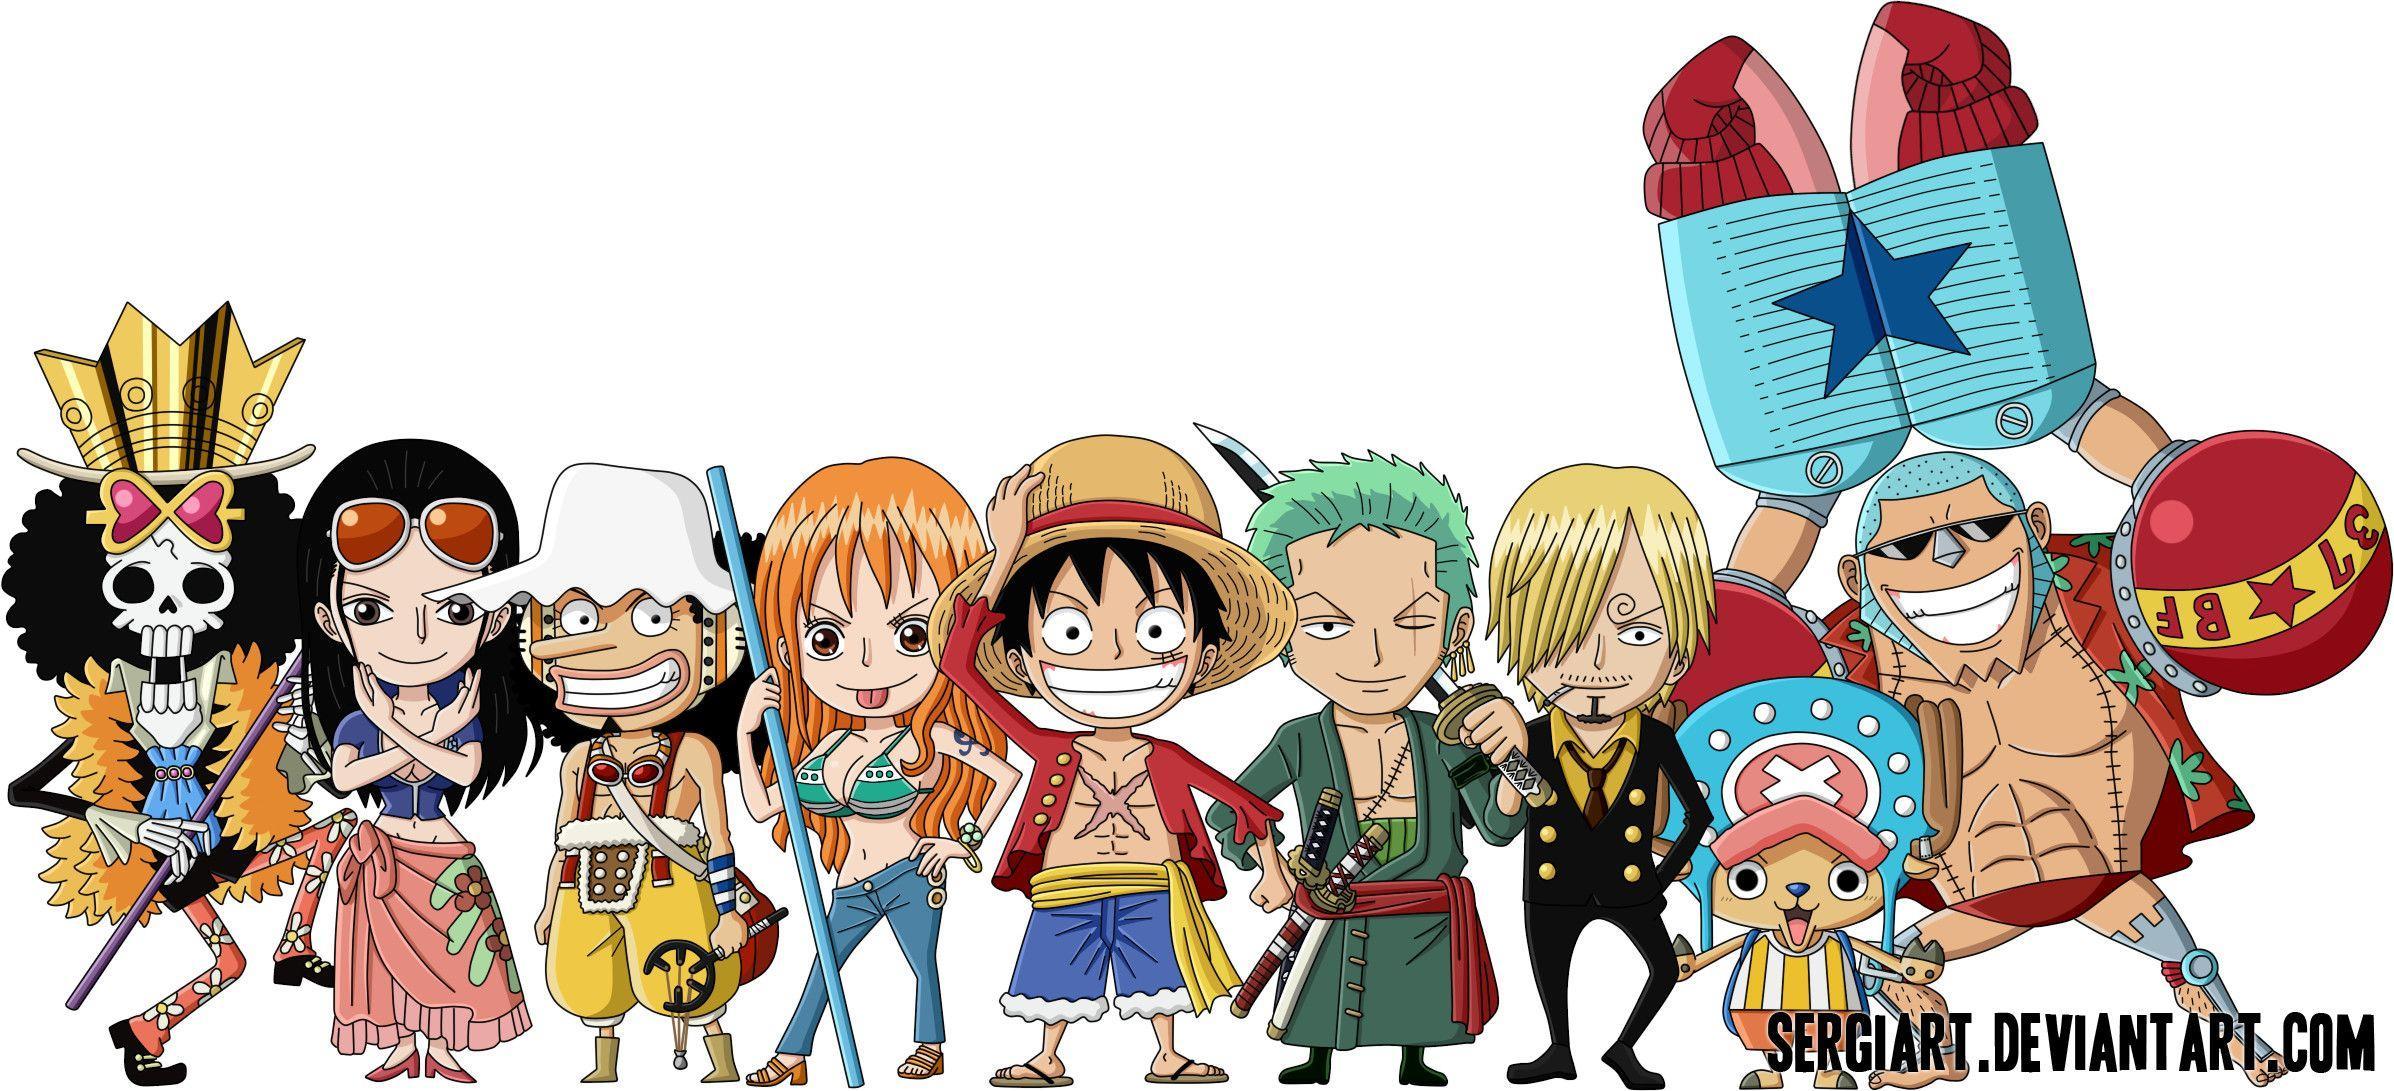 Hình nền One Piece Chibi là món quà tuyệt vời cho những ai yêu thích bộ anime này. Với các nhân vật được thiết kế nhỏ xinh, đáng yêu, bạn sẽ cảm thấy đầy vui vẻ và phấn khích mỗi khi mở máy tính hoặc điện thoại của mình. Hơn nữa, với cập nhật vào năm 2024, hình nền Chibi One Piece sẽ trông càng tươi sáng và bắt mắt hơn bao giờ hết.